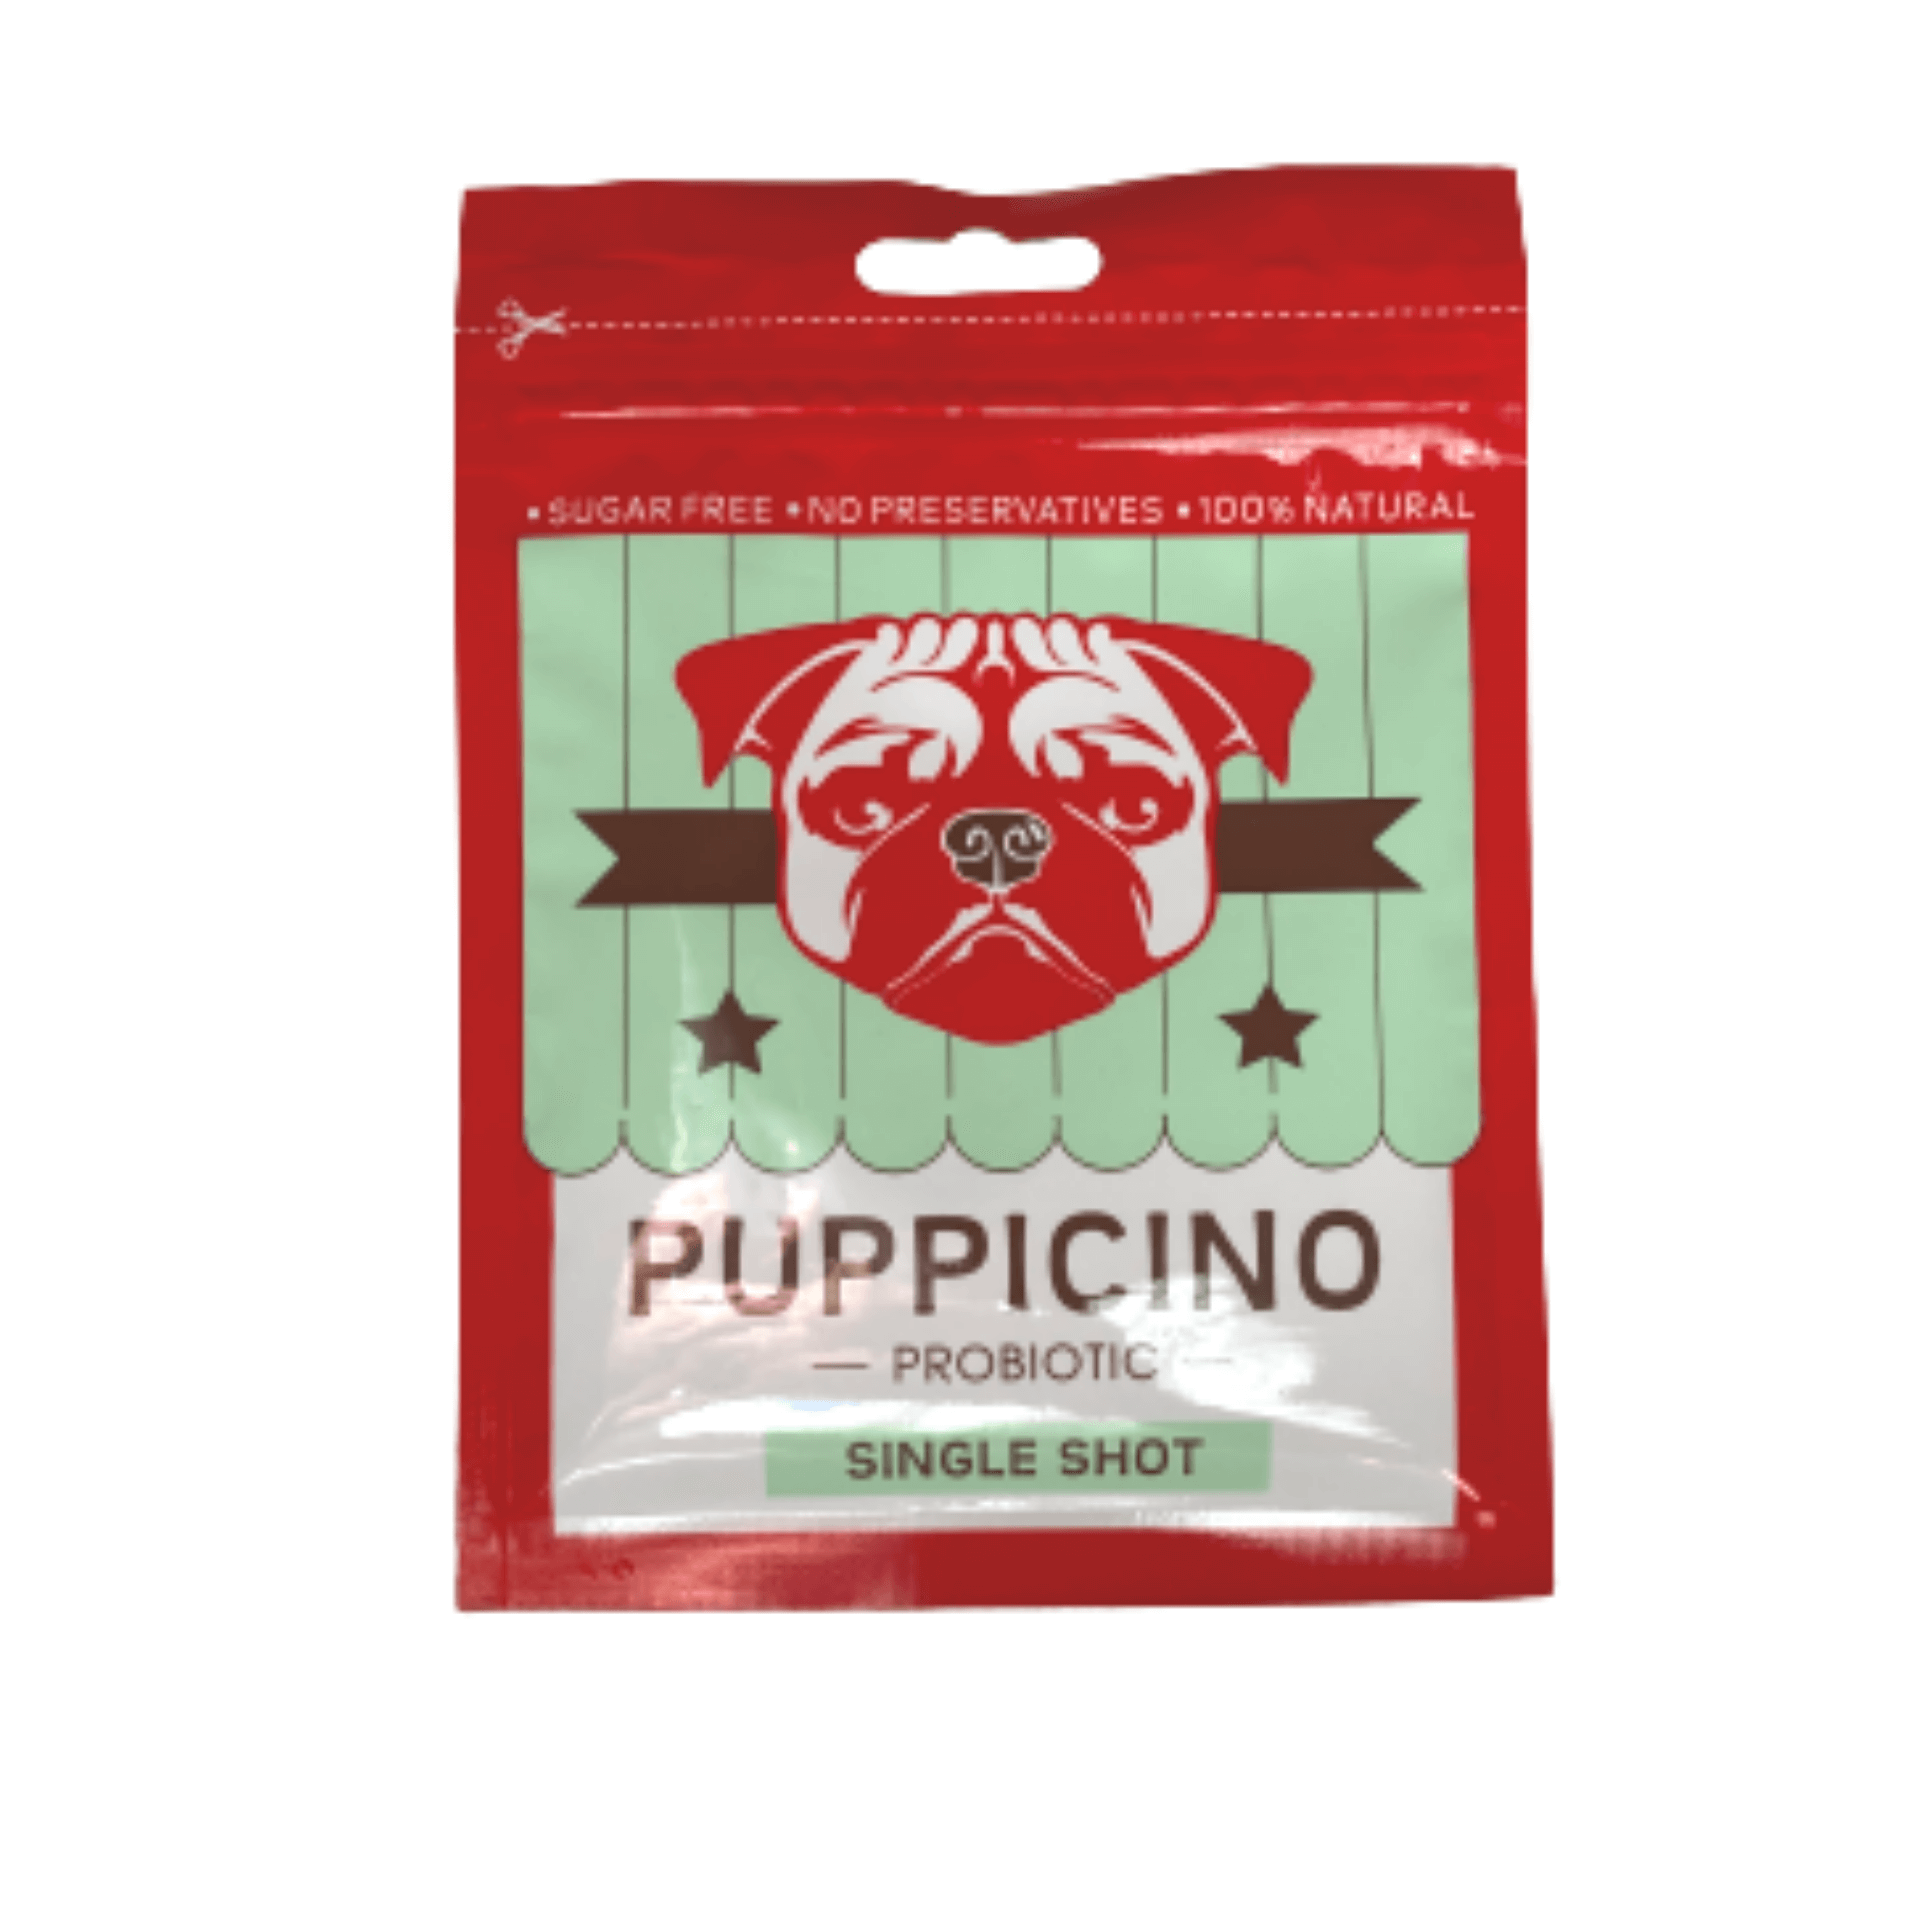 Puppicino probiotic edible dog drink